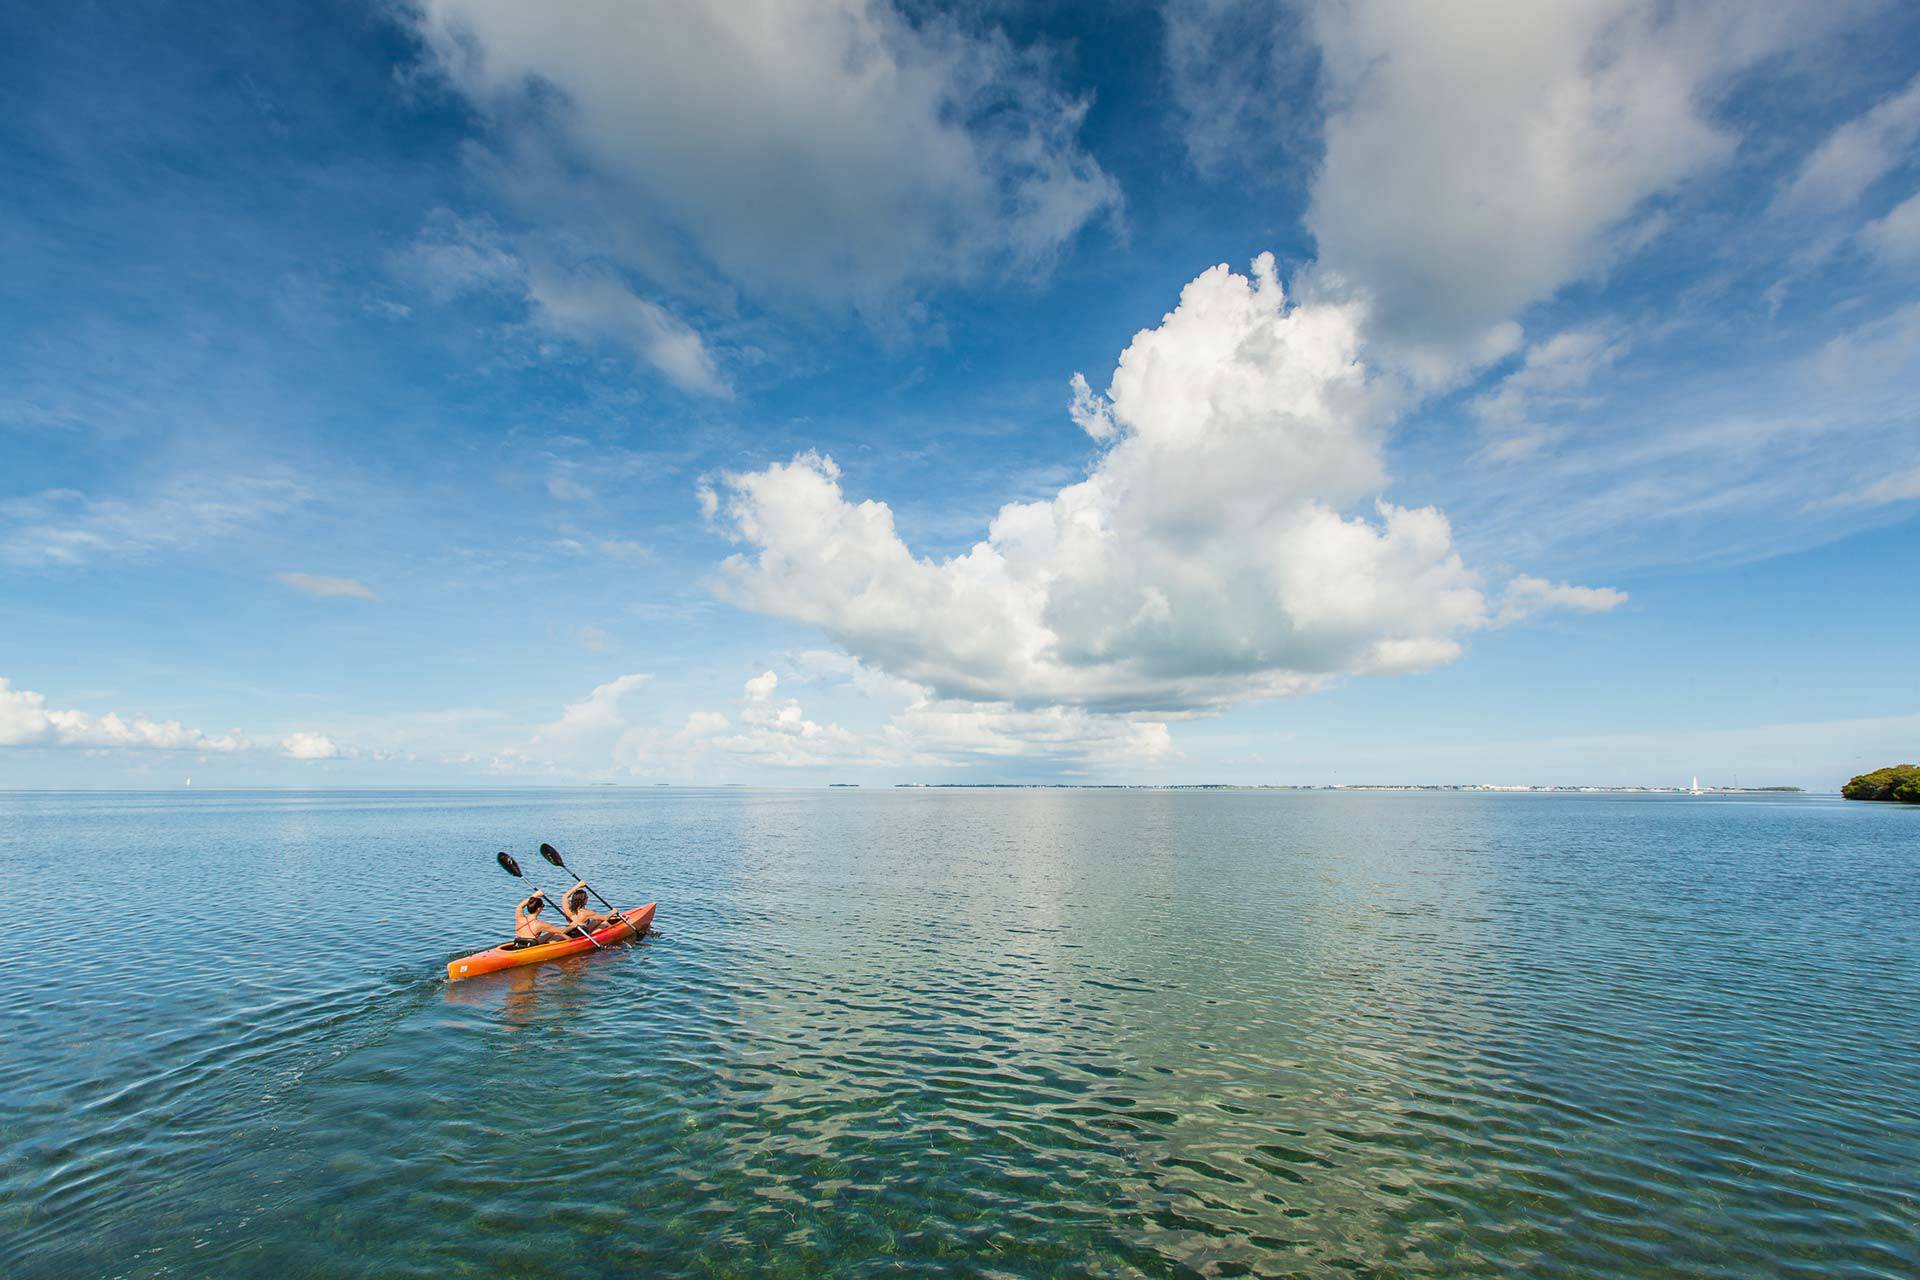 Two women in an orange kayak paddle in calm waters near Key West, FL